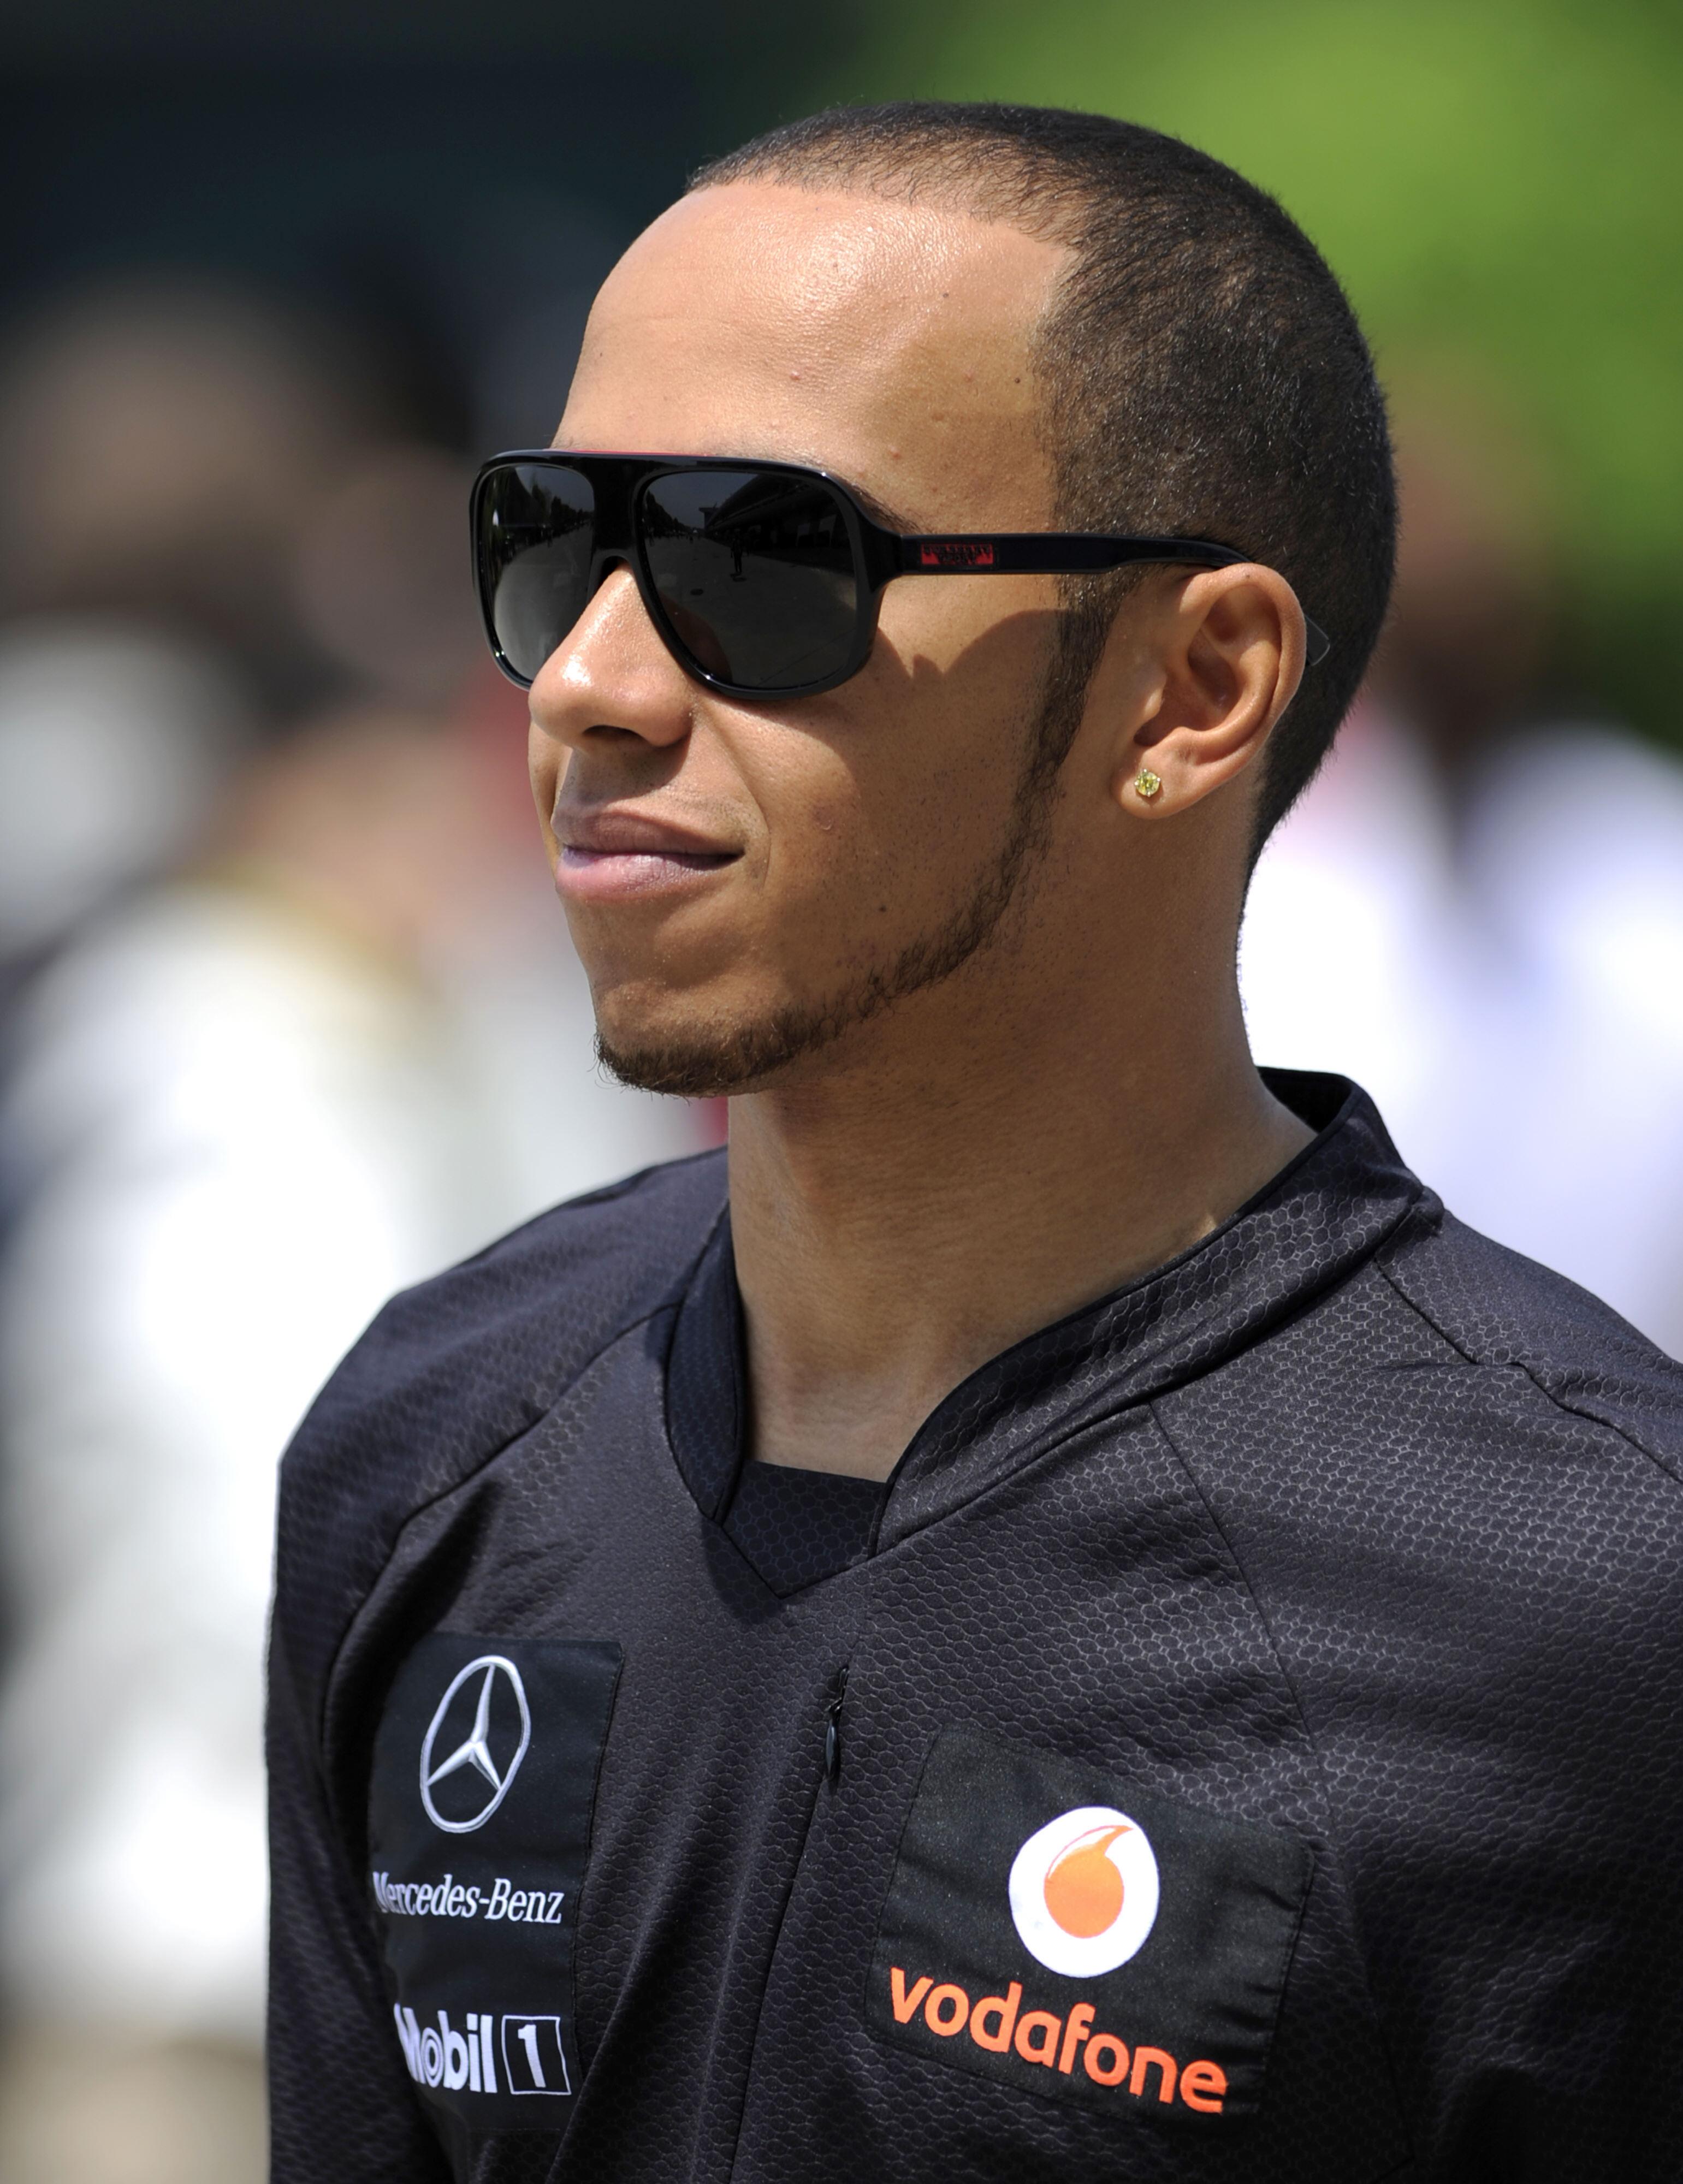 RAFFT SKJEGG: Lewis Hamilton i paddocken før et løp i Shanghai i 2011. Han har eksprimentert med ulike sveiser og styling på skjegget gjennom årene. 